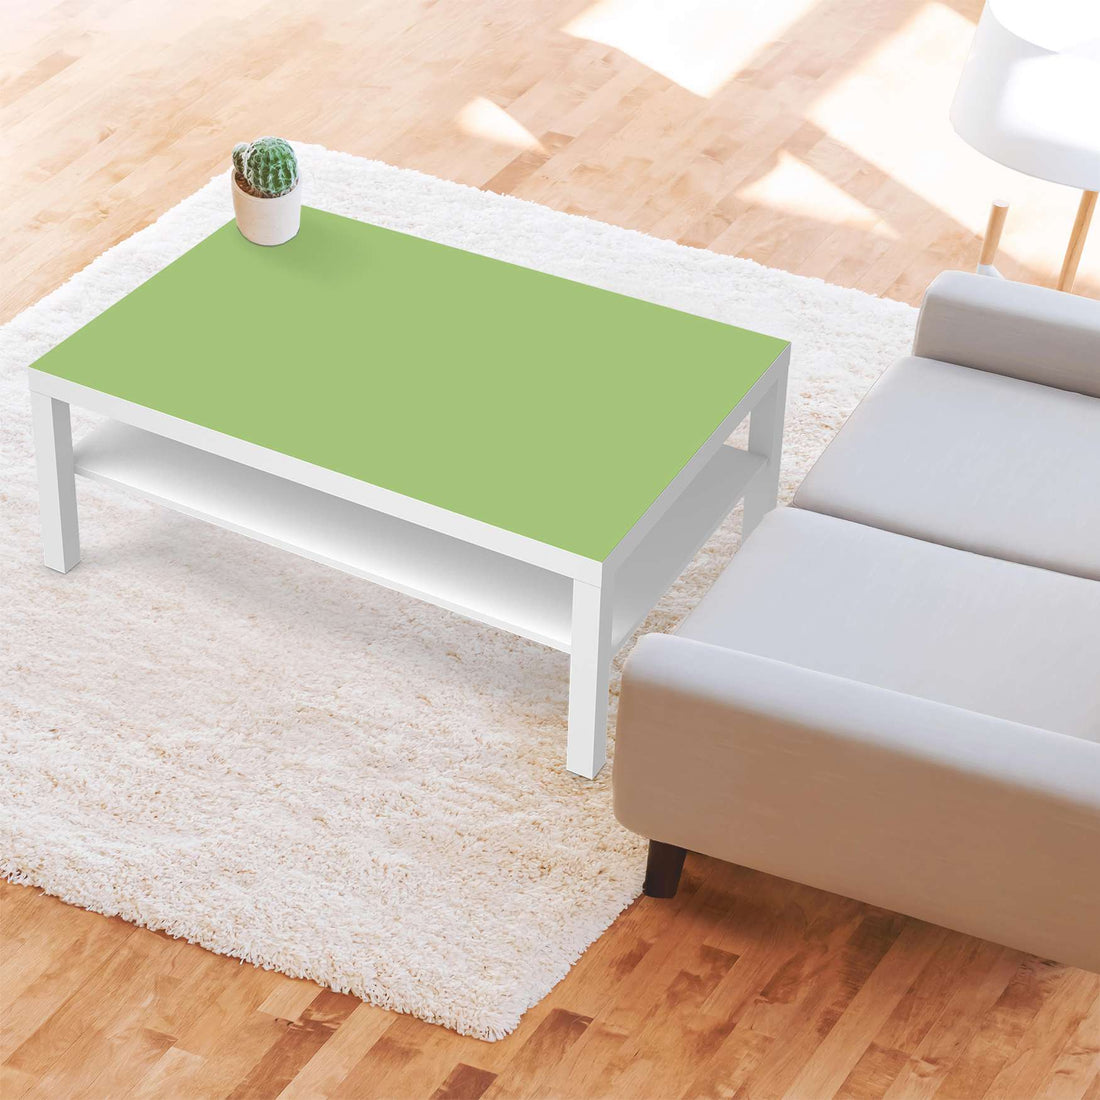 Klebefolie Hellgrün Light - IKEA Lack Tisch 118x78 cm - Wohnzimmer